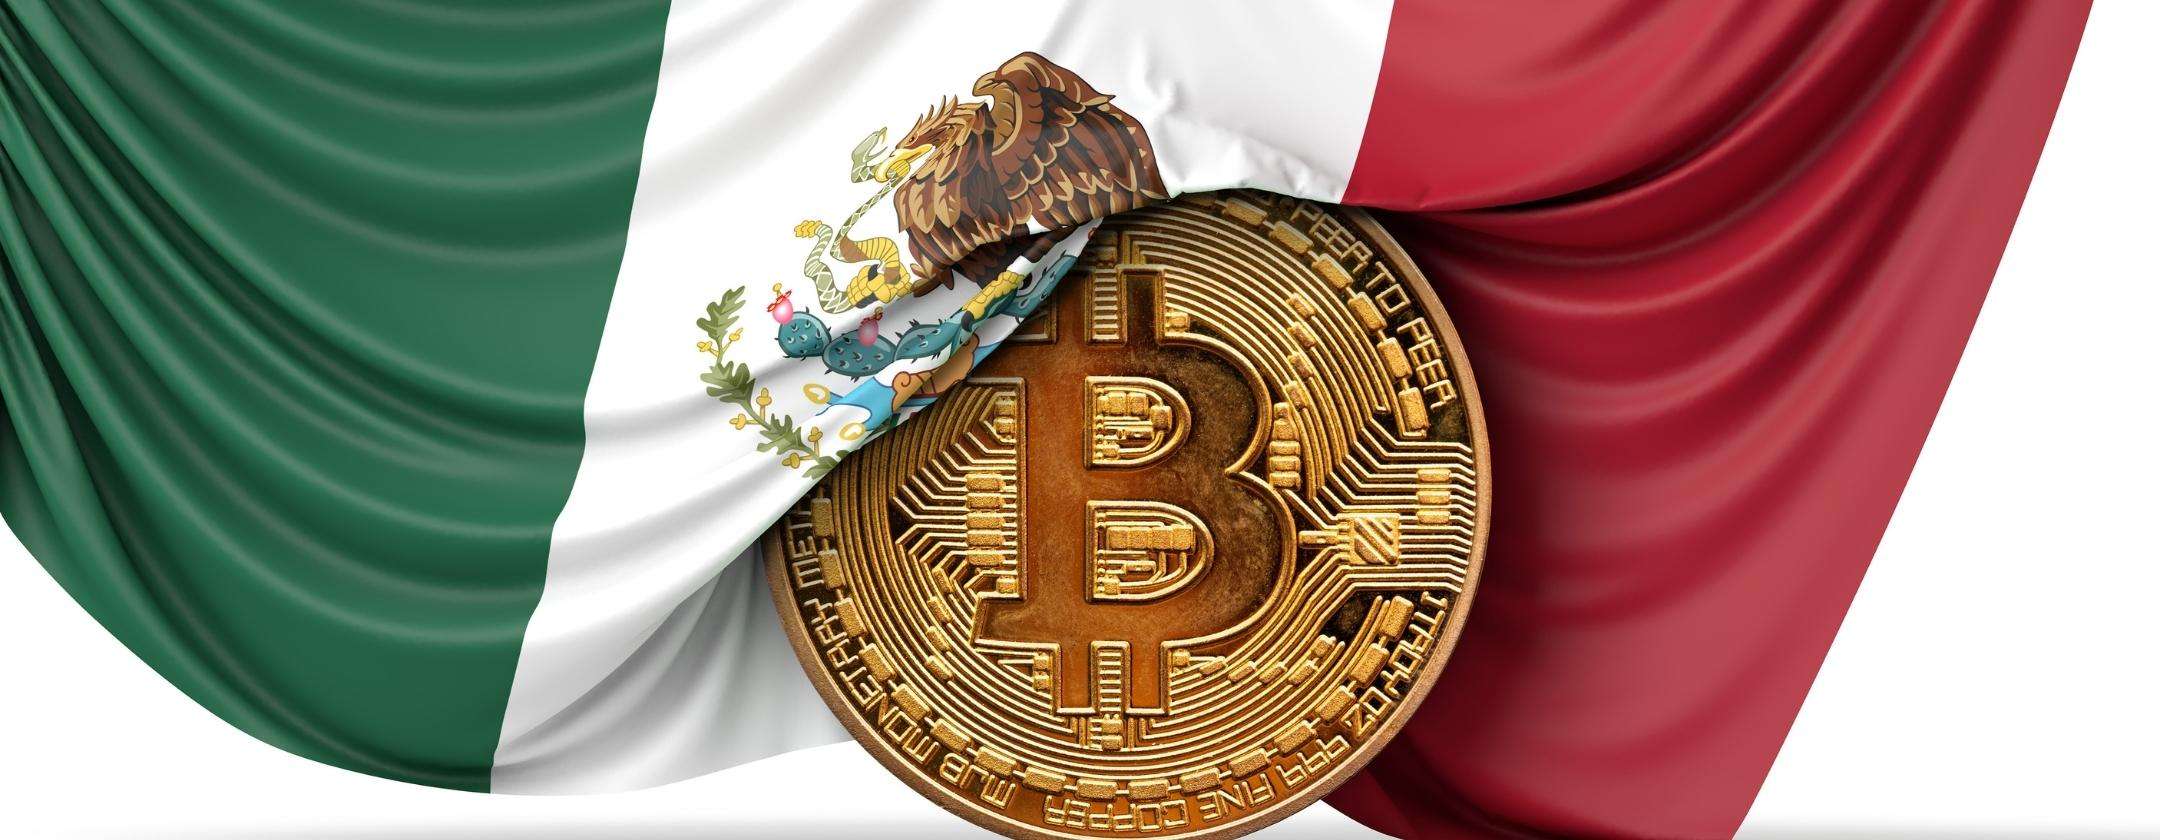 Continua l’avanzata di Bitcoin, ora anche in Messico